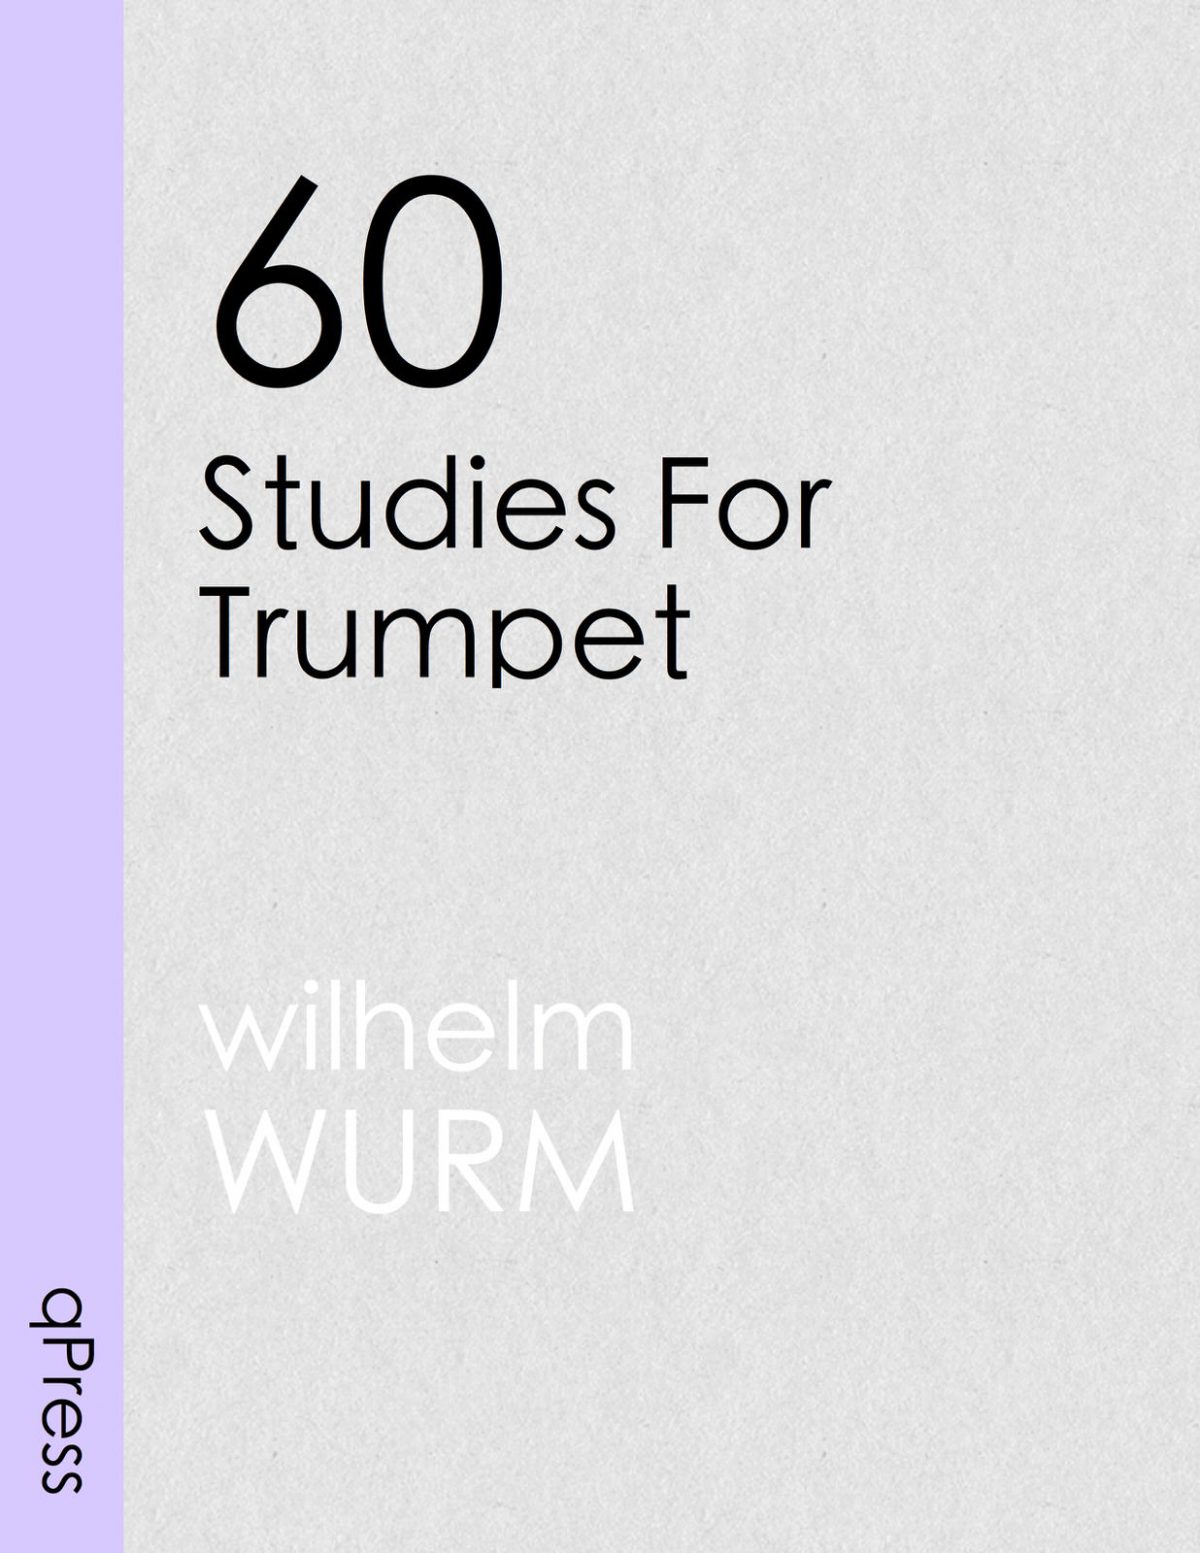 wurm-60-studies-for-trumpet